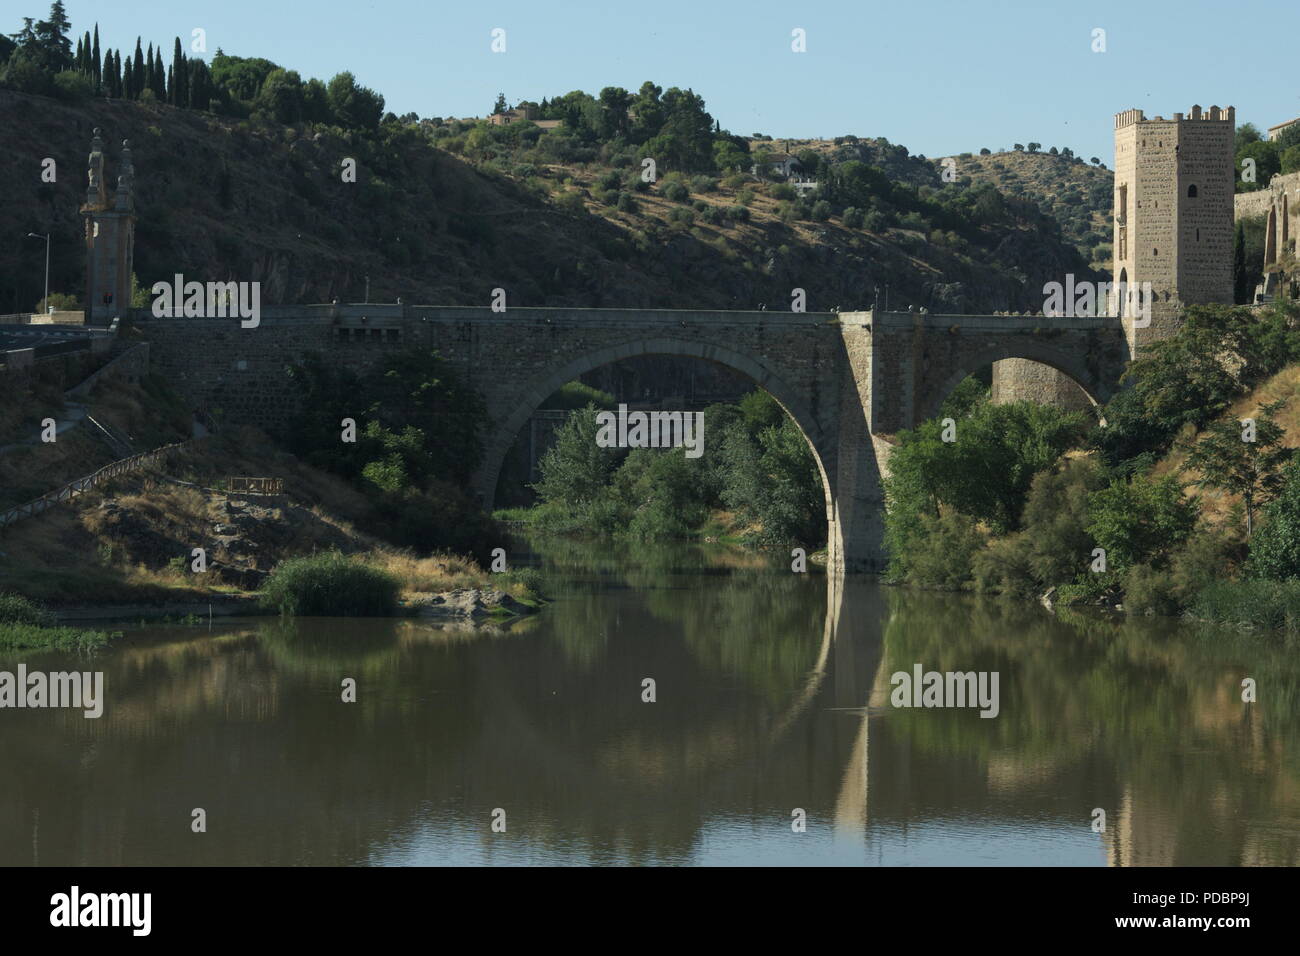 Vista del histórico puente de Alcántara en la antigua ciudad española de Toledo. Una elegante estructura reflejada en las tranquilas aguas del río Tajo. Foto de stock